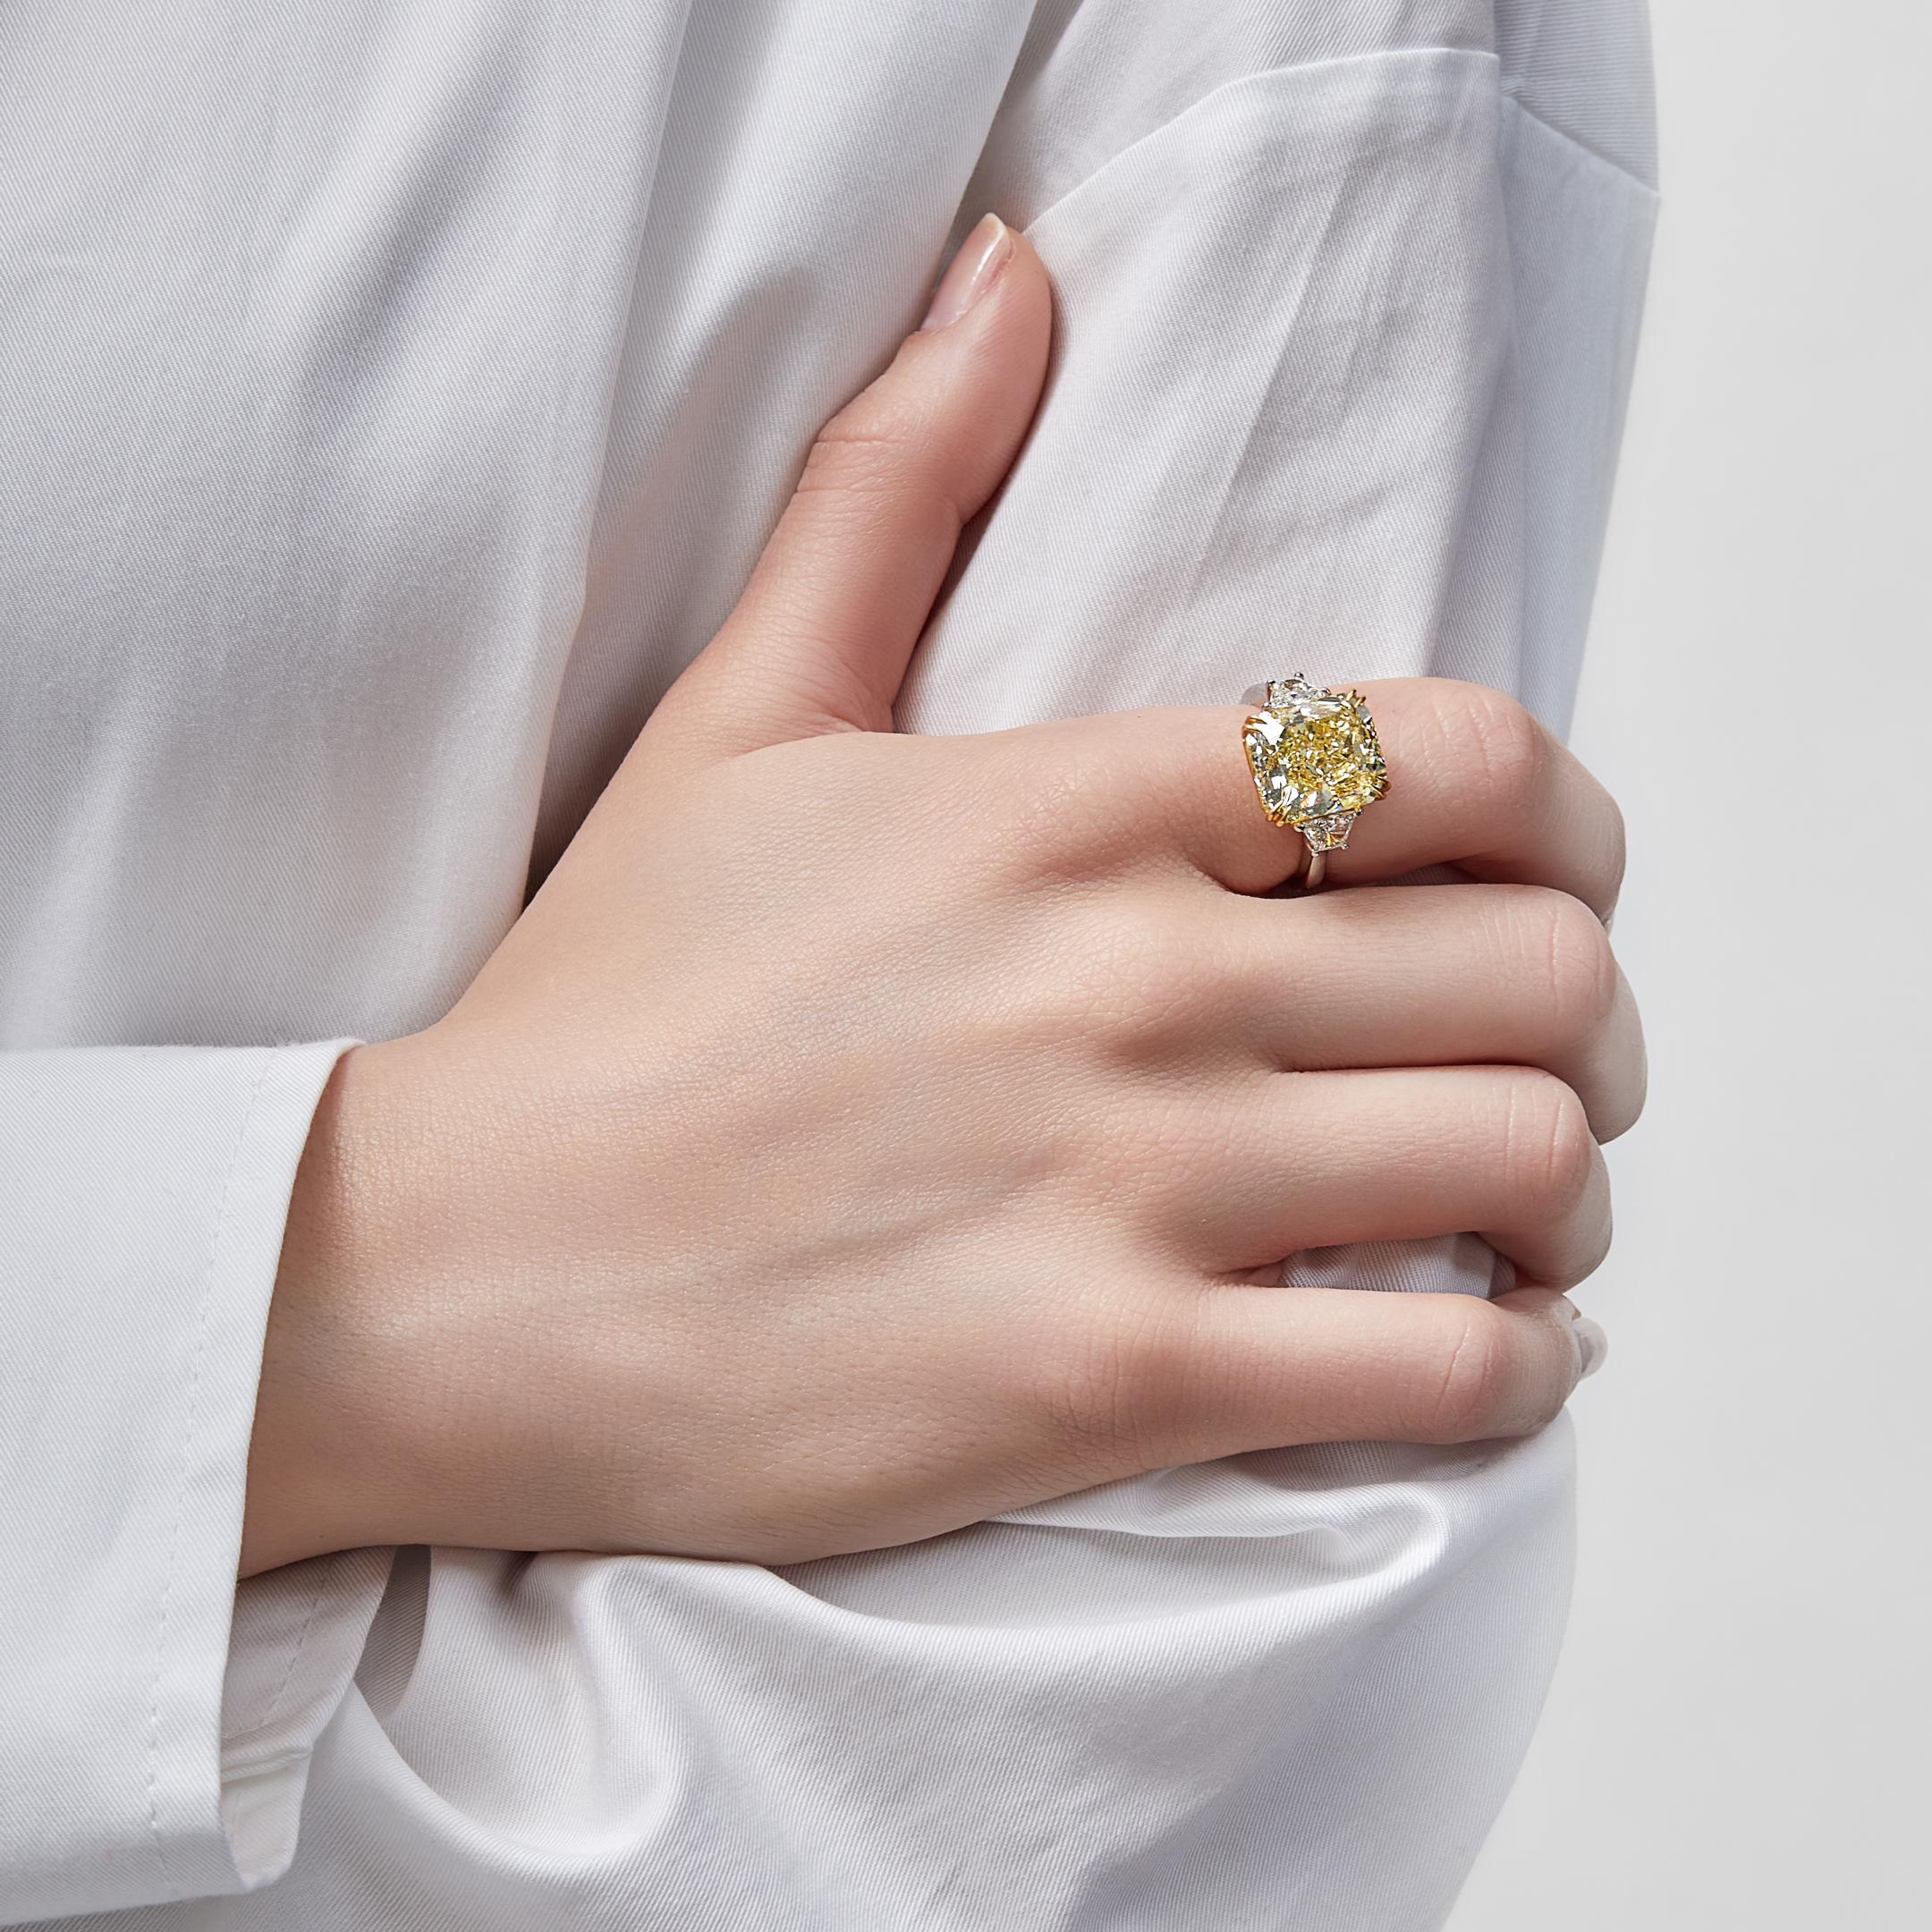 Erhöhen Sie Ihren Stil mit unserem atemberaubenden Intense Yellow Radiant Diamond Ring. Dieses exquisite Stück zeigt einen faszinierenden gelben Diamanten im rechteckigen Schliff.
Das fesselnde Fancy Intense Yellow mit einem beeindruckenden Gewicht